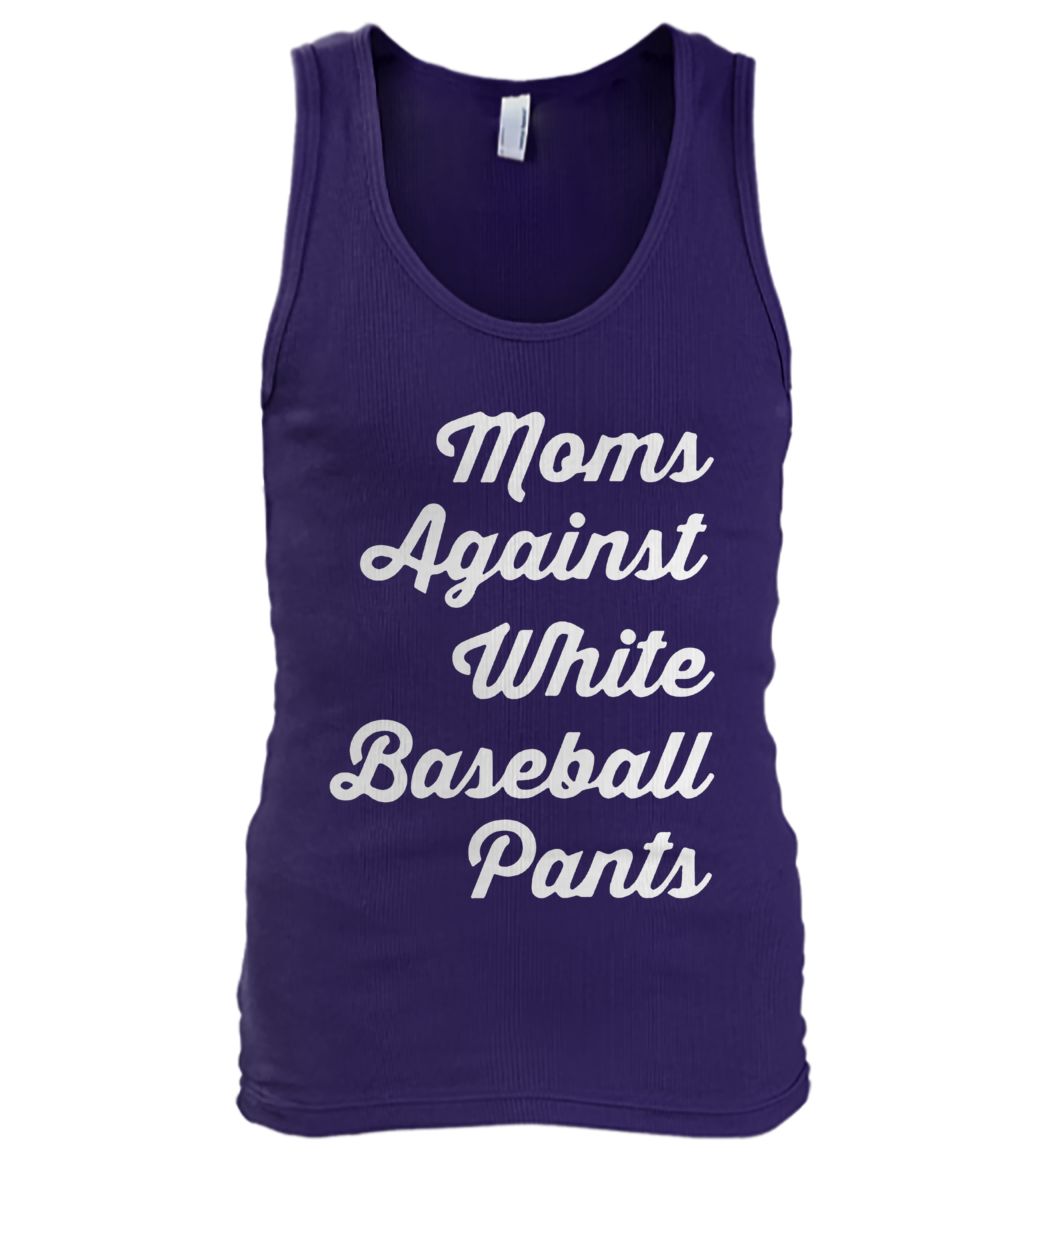 Mom against white baseball pants men's tank top